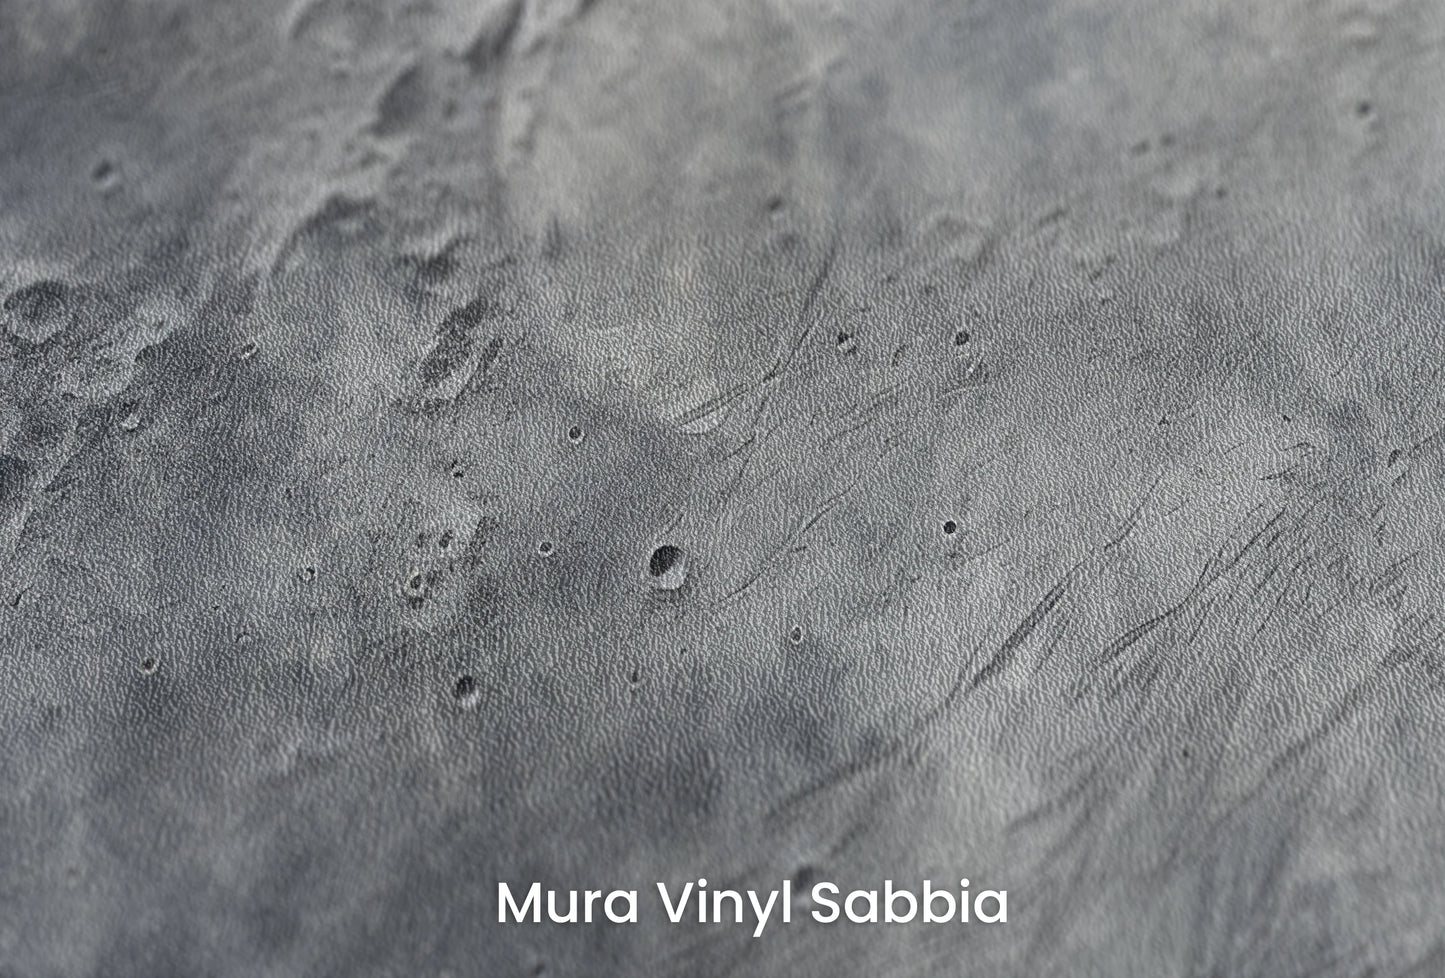 Zbliżenie na artystyczną fototapetę o nazwie Moonlight Sonata na podłożu Mura Vinyl Sabbia struktura grubego ziarna piasku.